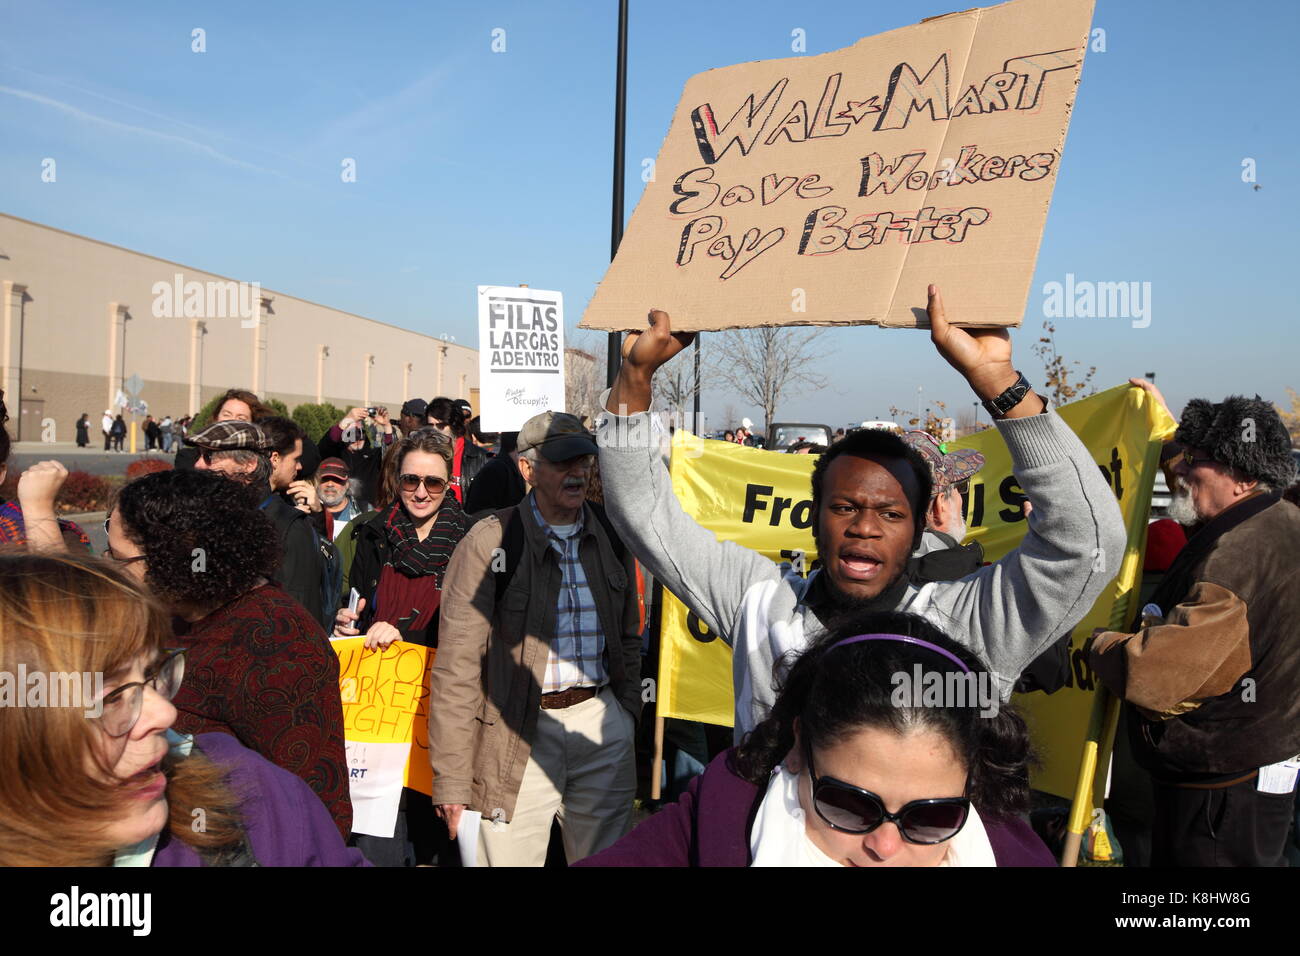 Demonstranten wie union Gruppen und 'Protest Besetzt die Wall Street" ausserhalb des Wal Mart Superstore in Seacaucus, New Jersey am 23. November 2012. Stockfoto